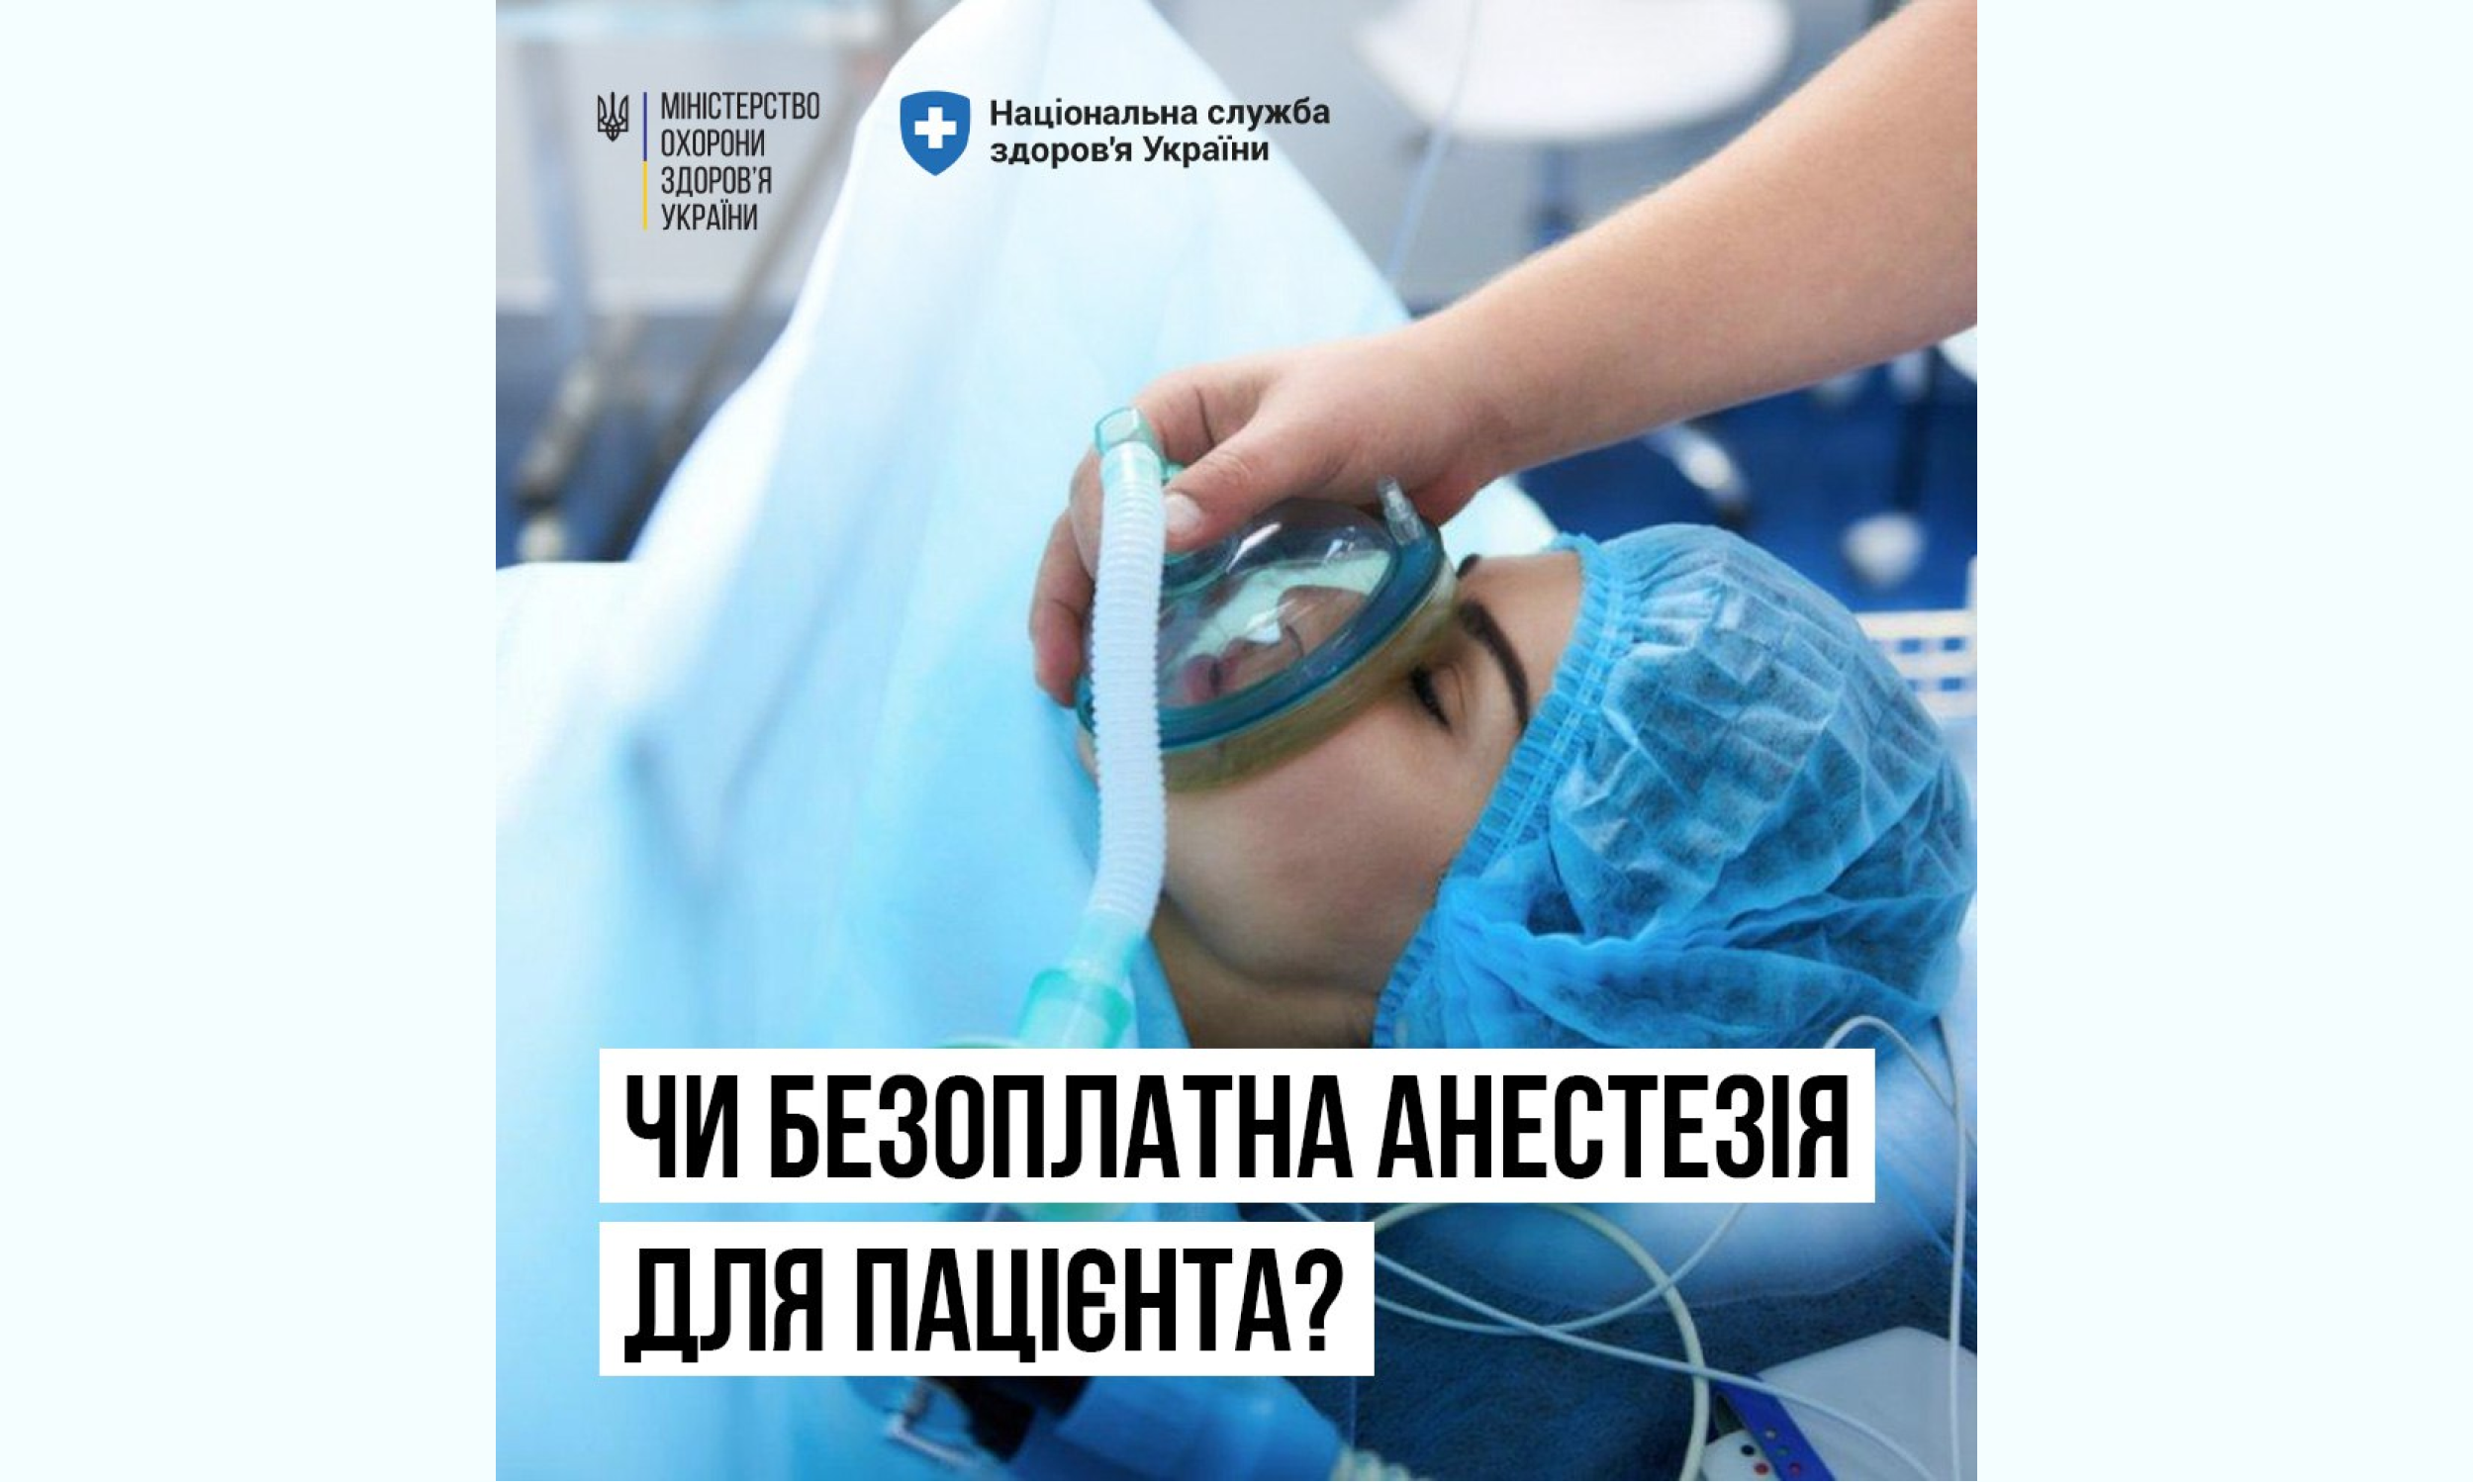 НСЗУ пояснює чи безоплатна анестезія для пацієнта